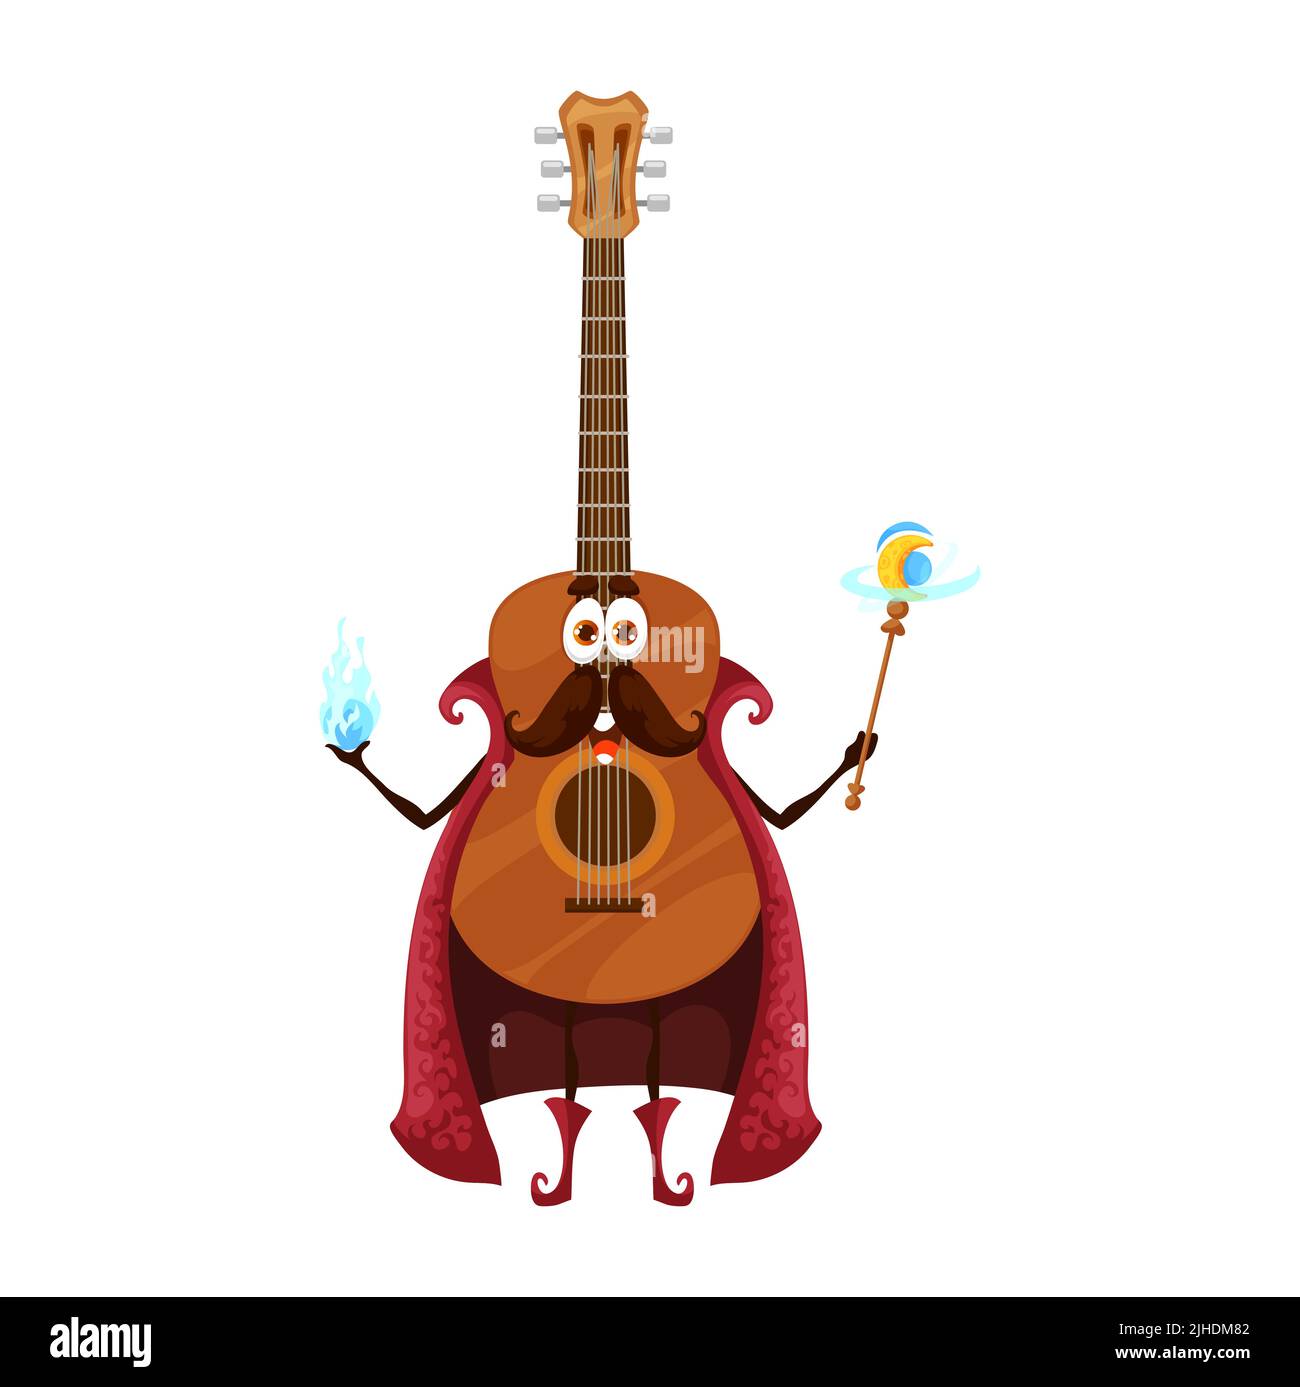 Guitar cartoon immagini e fotografie stock ad alta risoluzione - Alamy